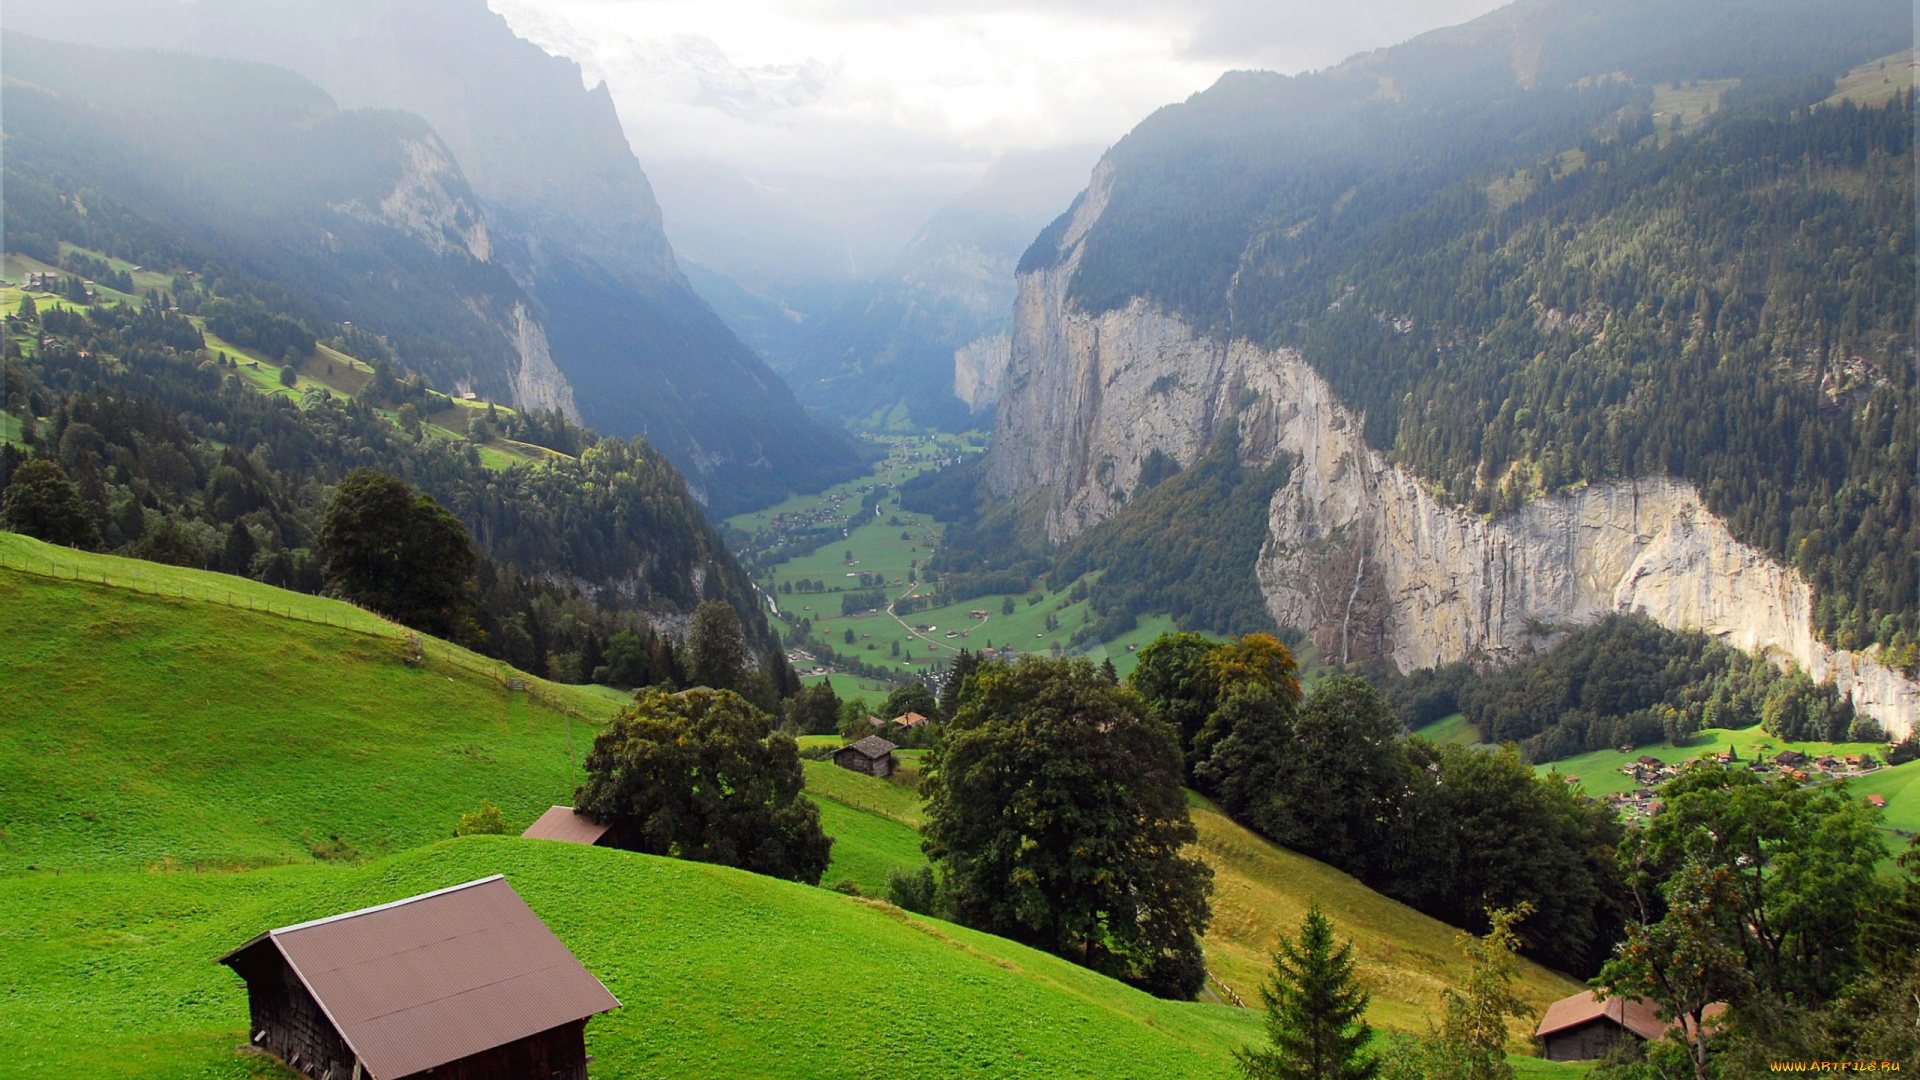 природа, горы, lauterbrunnen, панорама, дымка, домики, деревня, долина, ущелье, деревья, скалы, швейцария